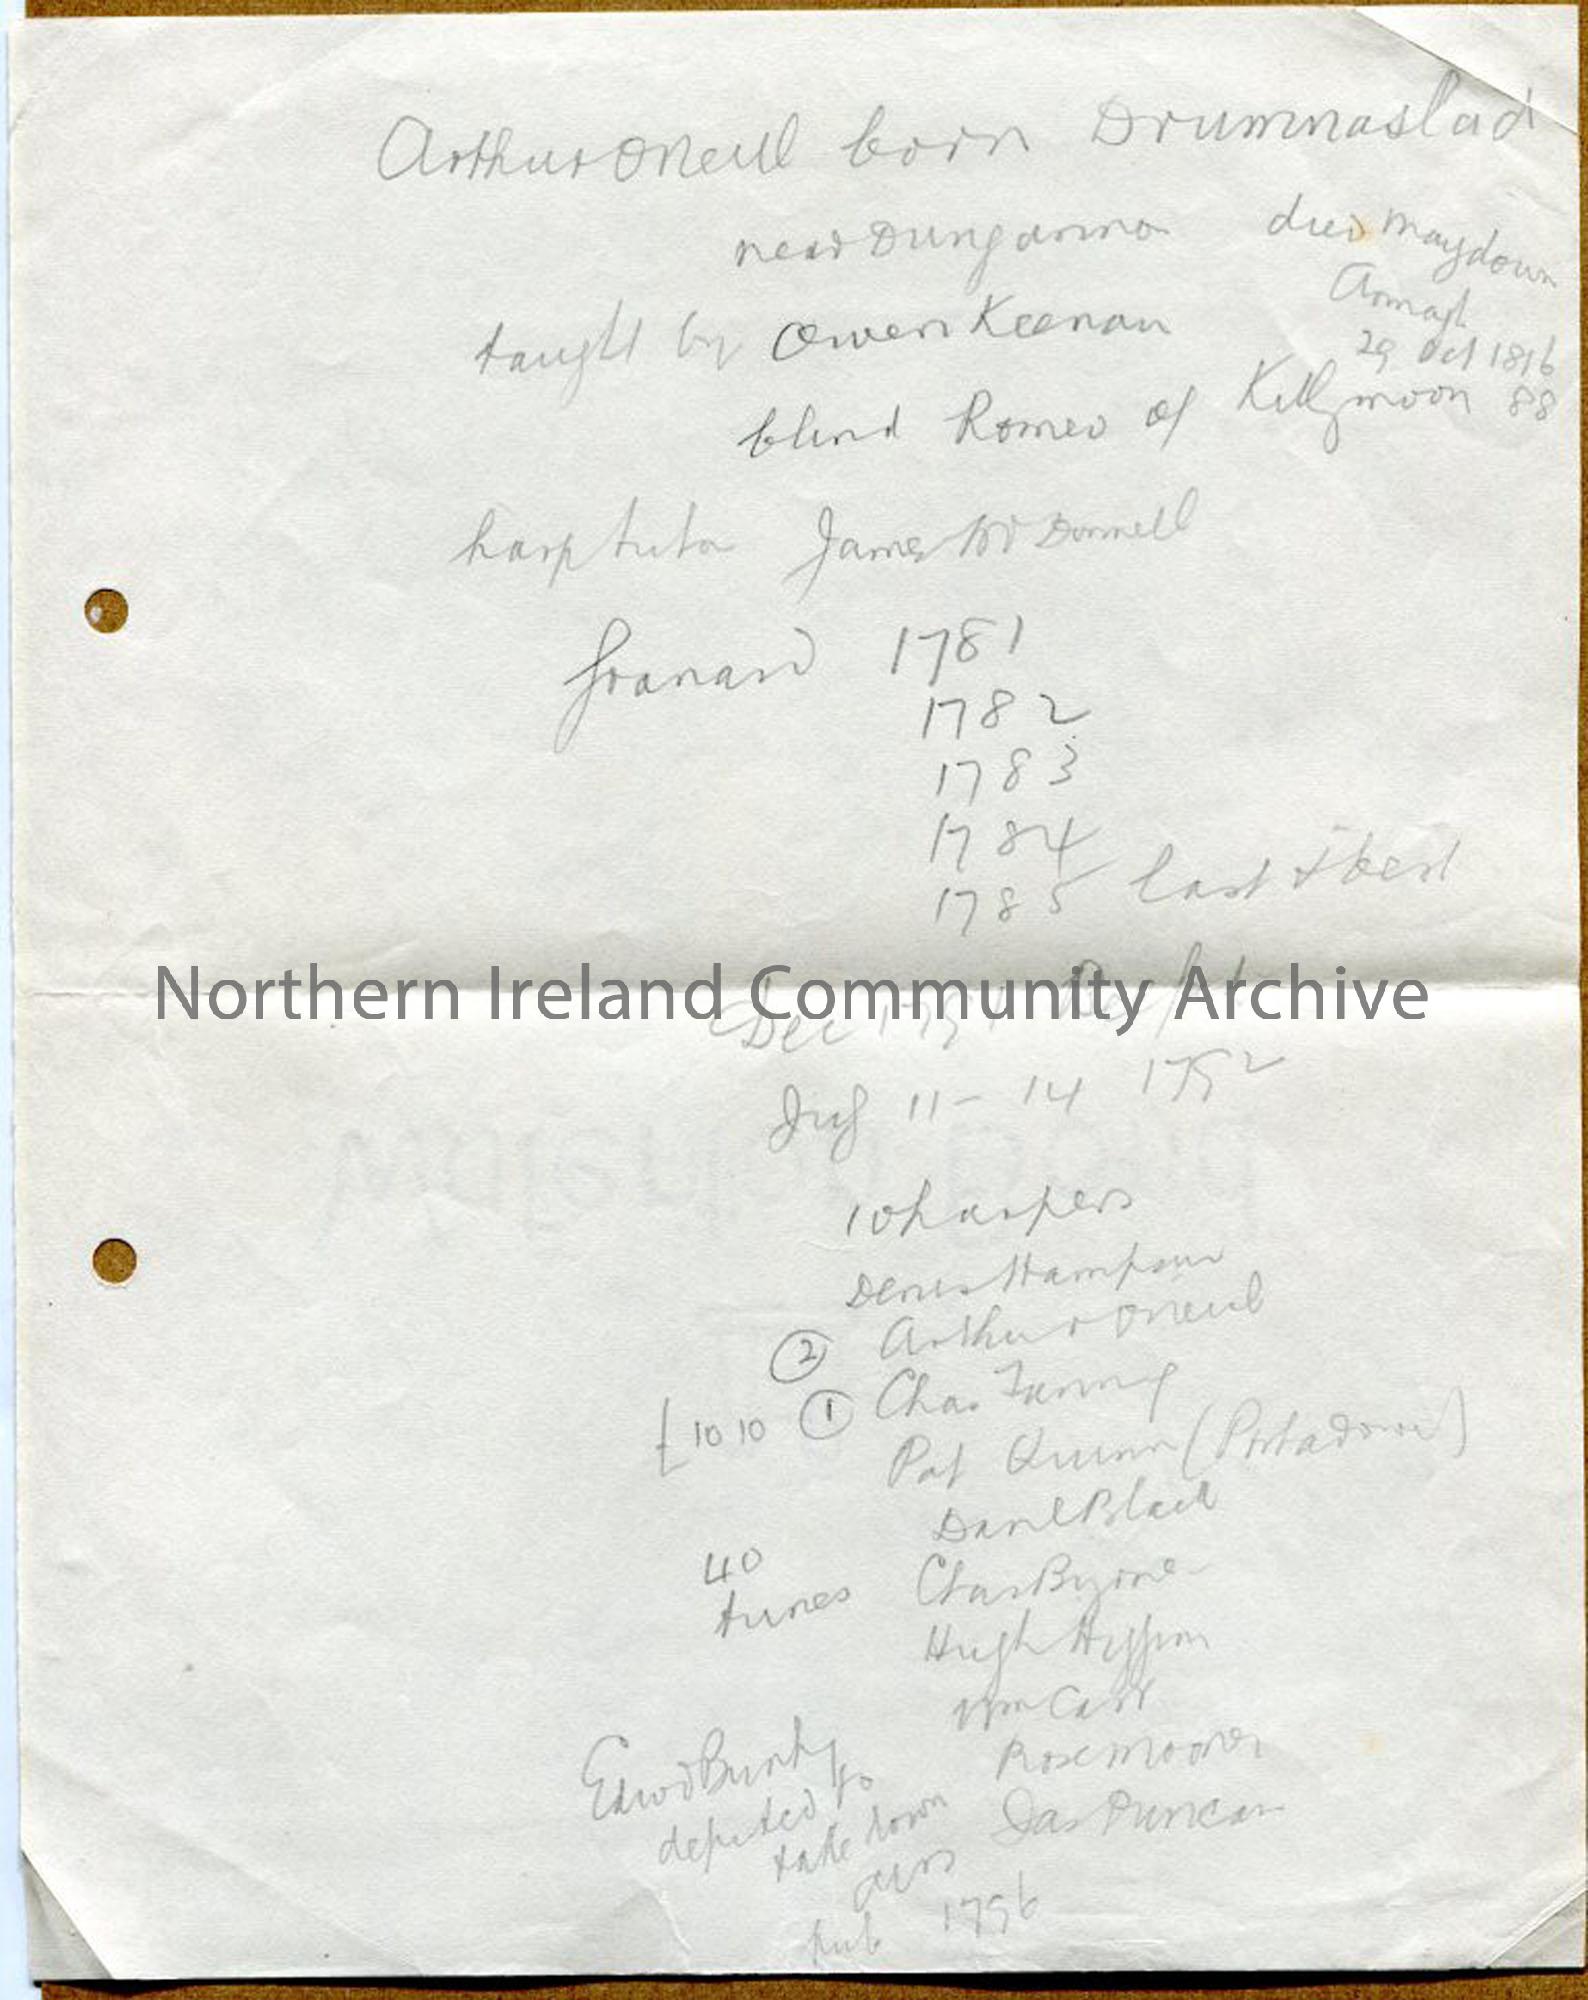 Handwritten notes re: Arthur O’Neill, harper